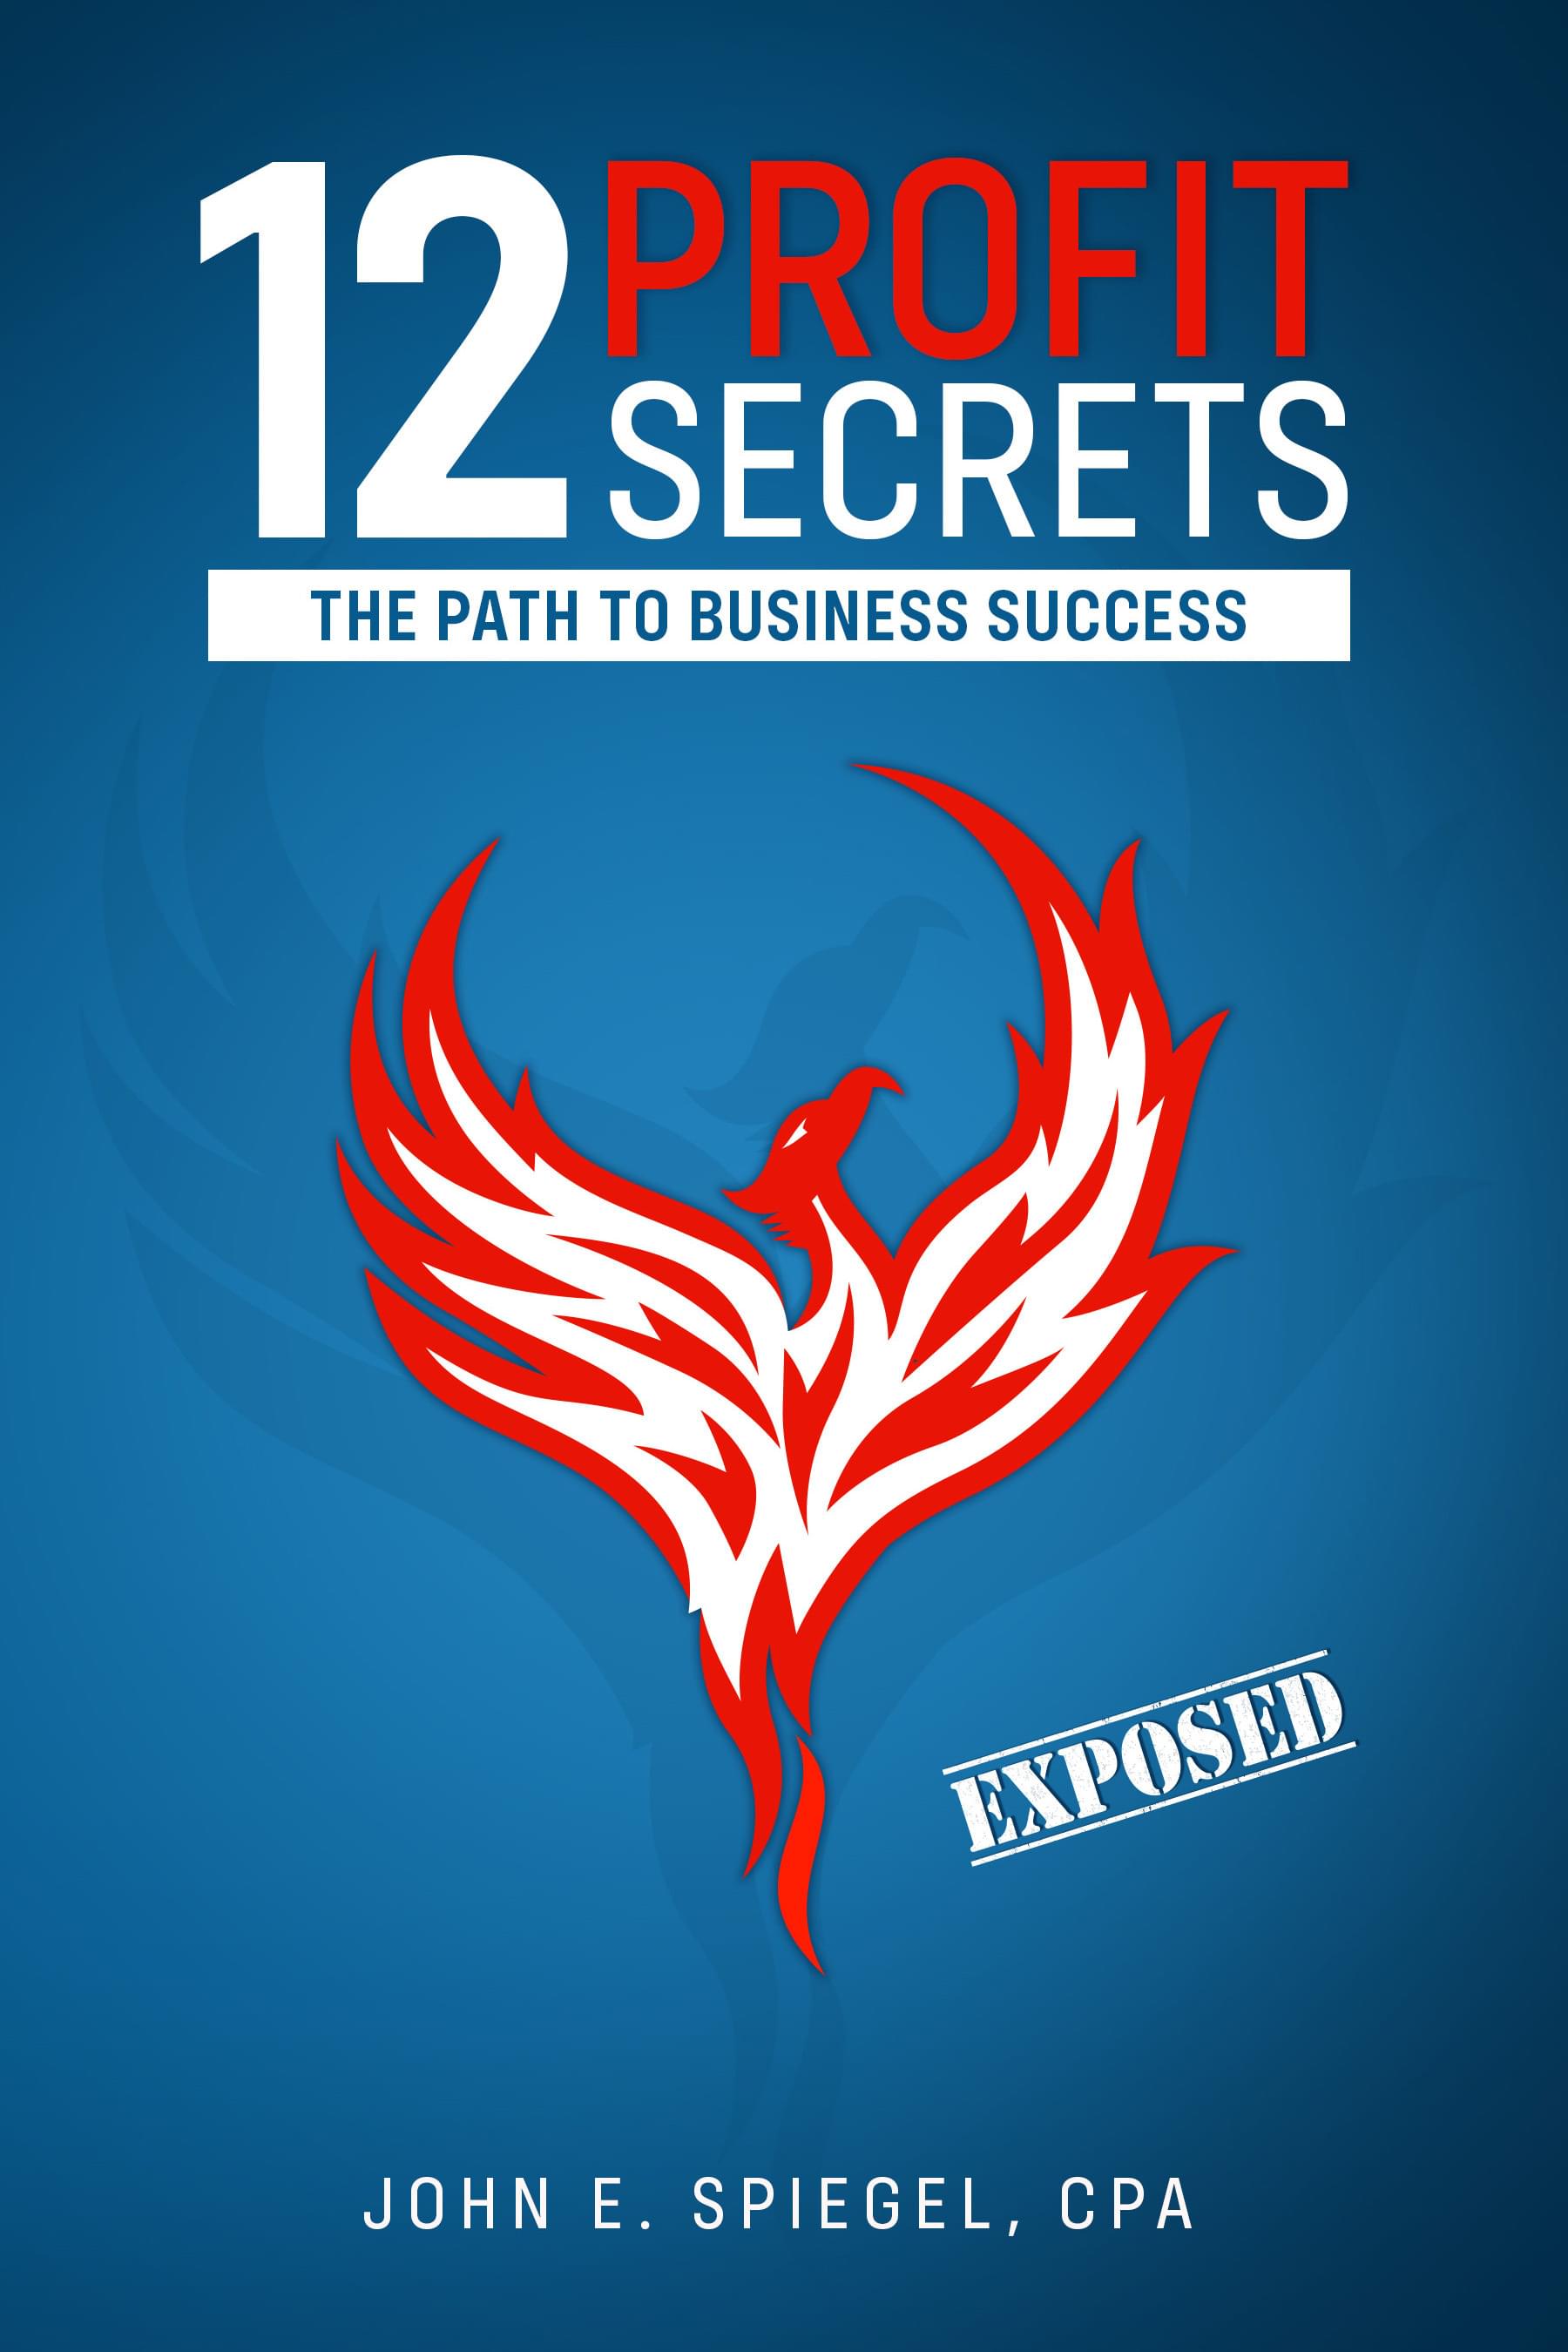 12 Profit Secrets: The Path to Business Success